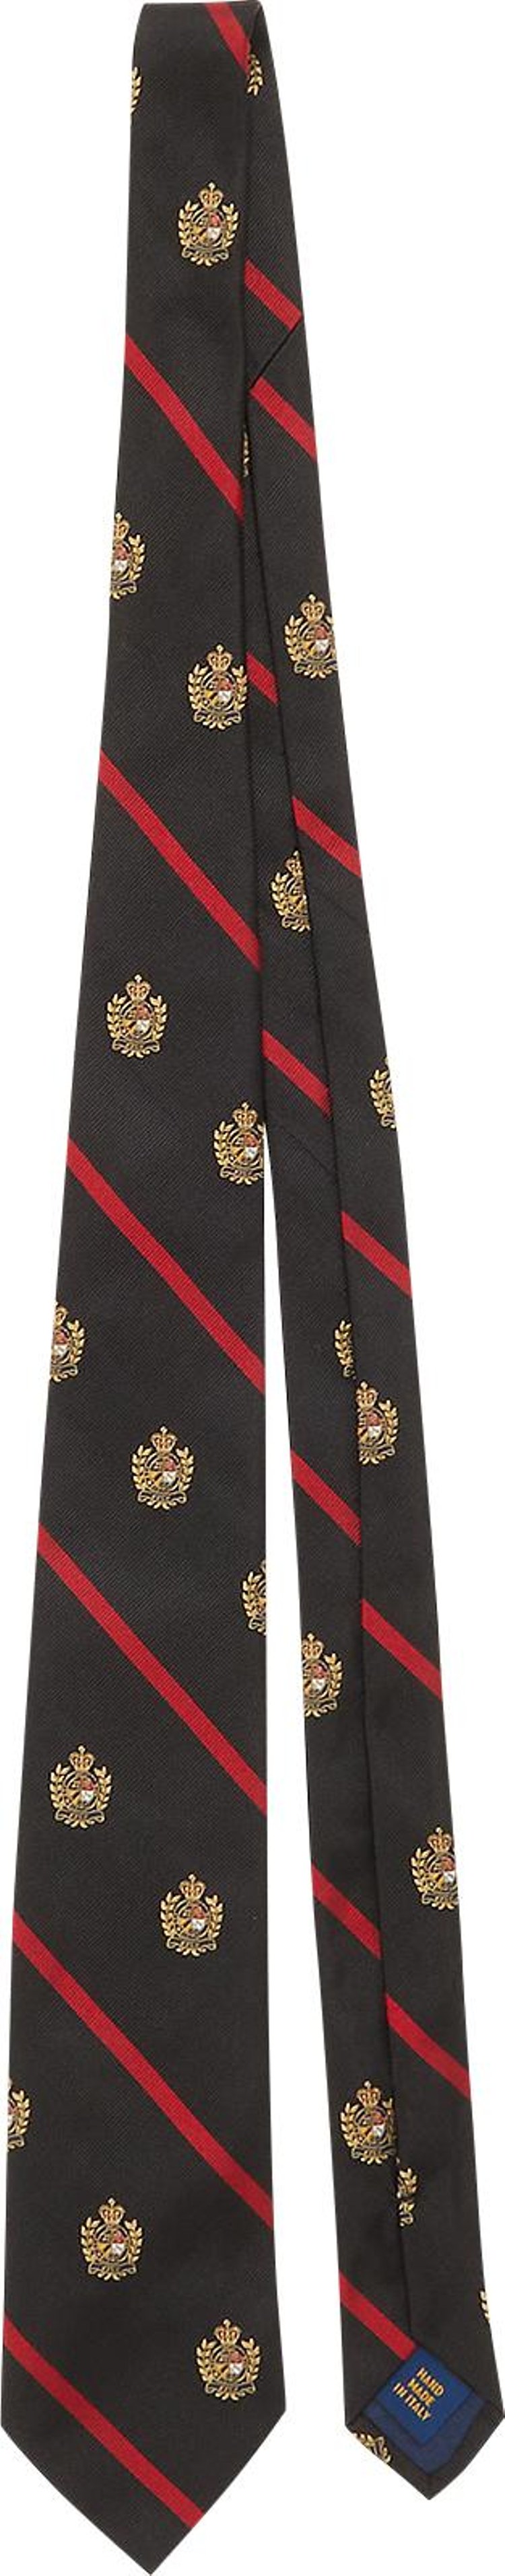 GOAT Exclusive Polo Ralph Lauren Vintage Polo Crest Silk Tie Black